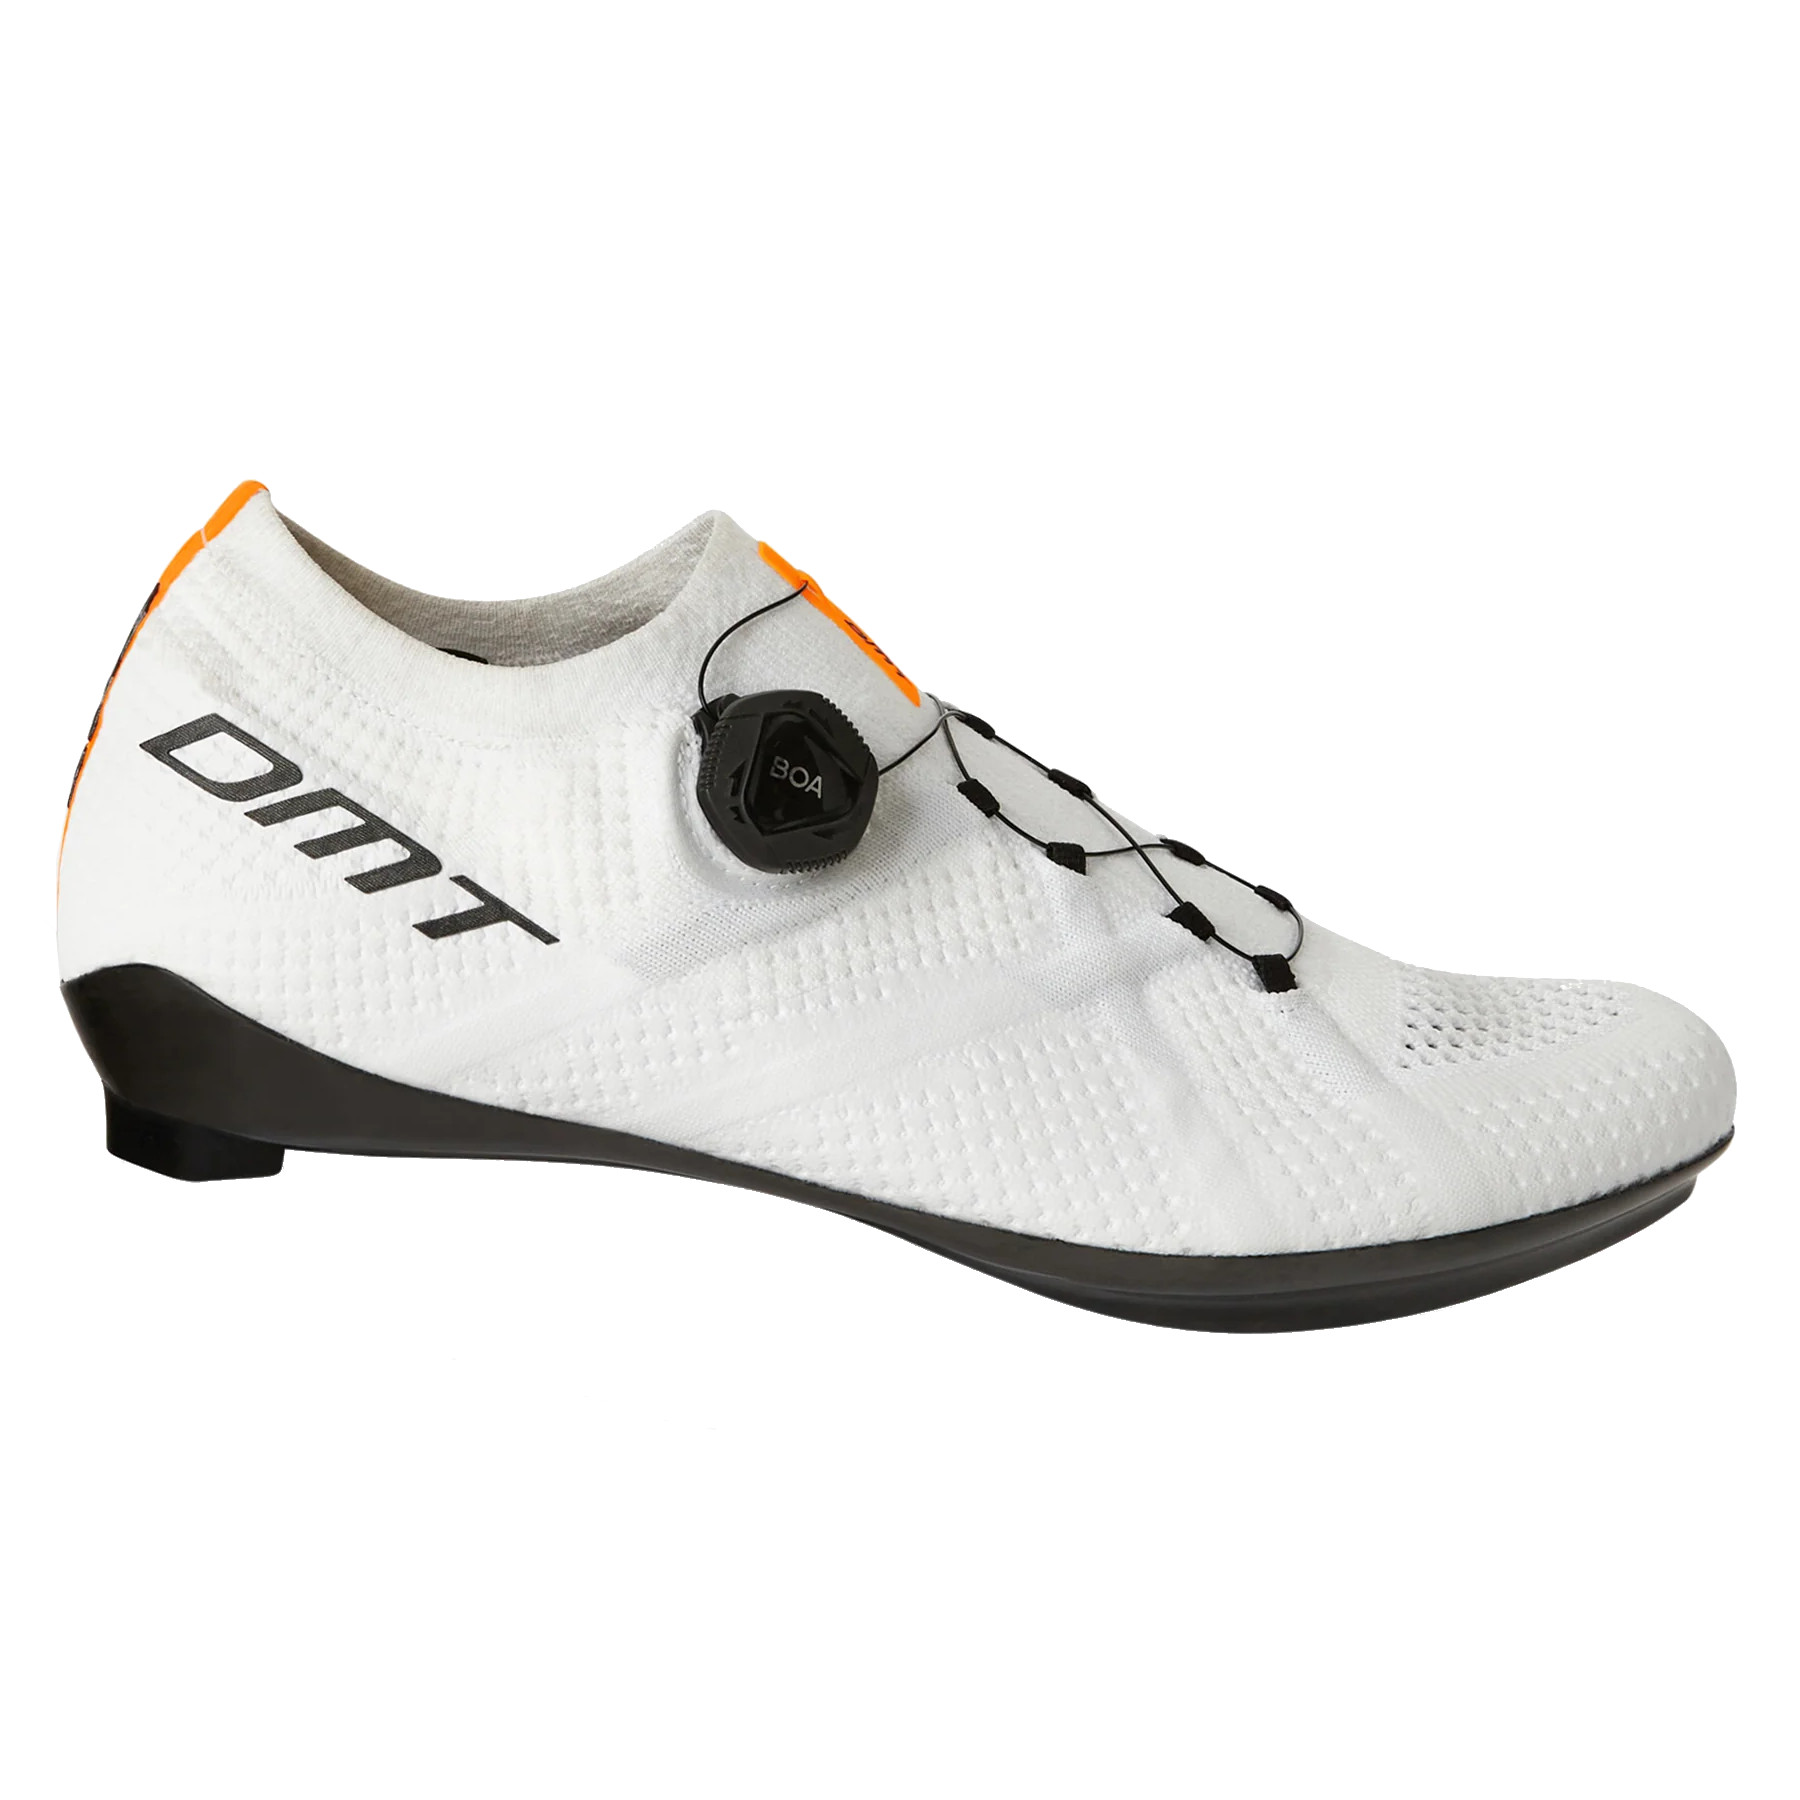 Productfoto van DMT KR1 Racefietsschoenen - wit/wit